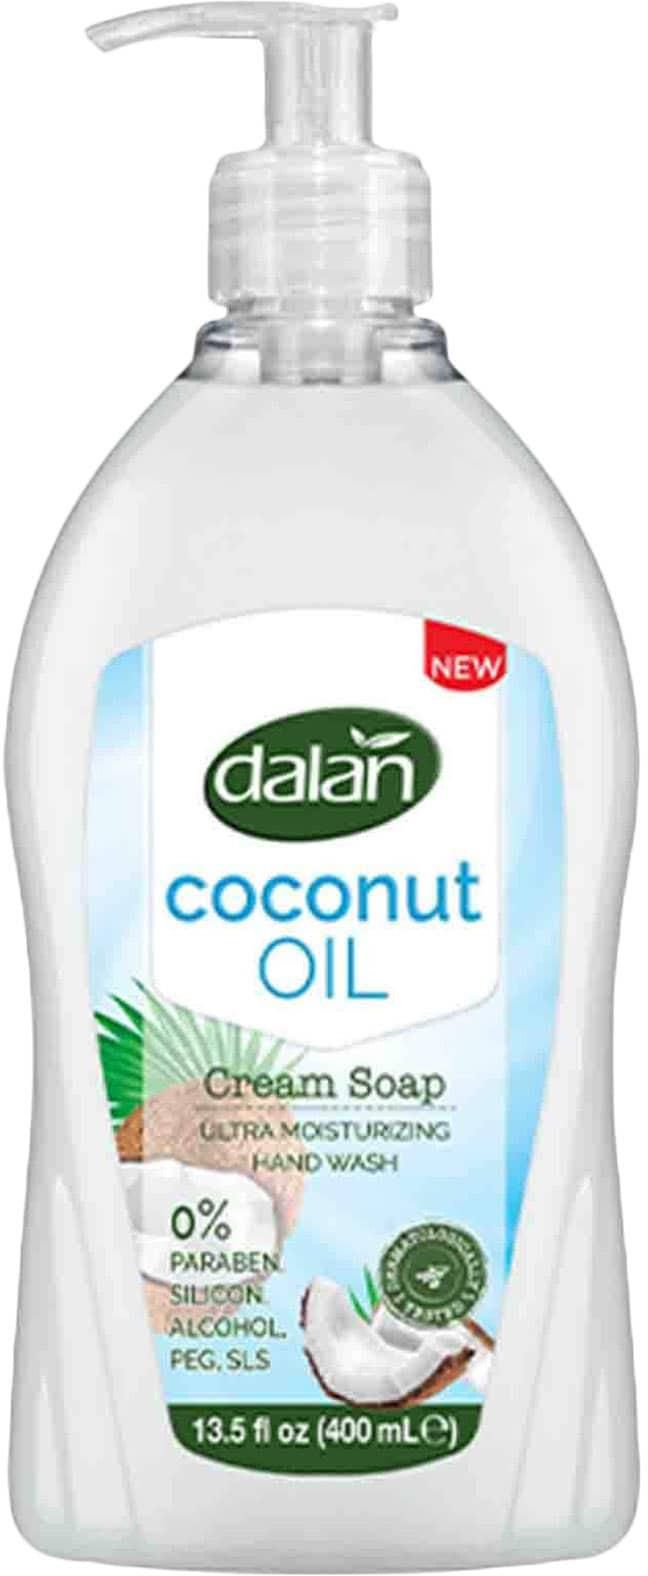 Dalan Crm Soap Coconut Oil 400Ml